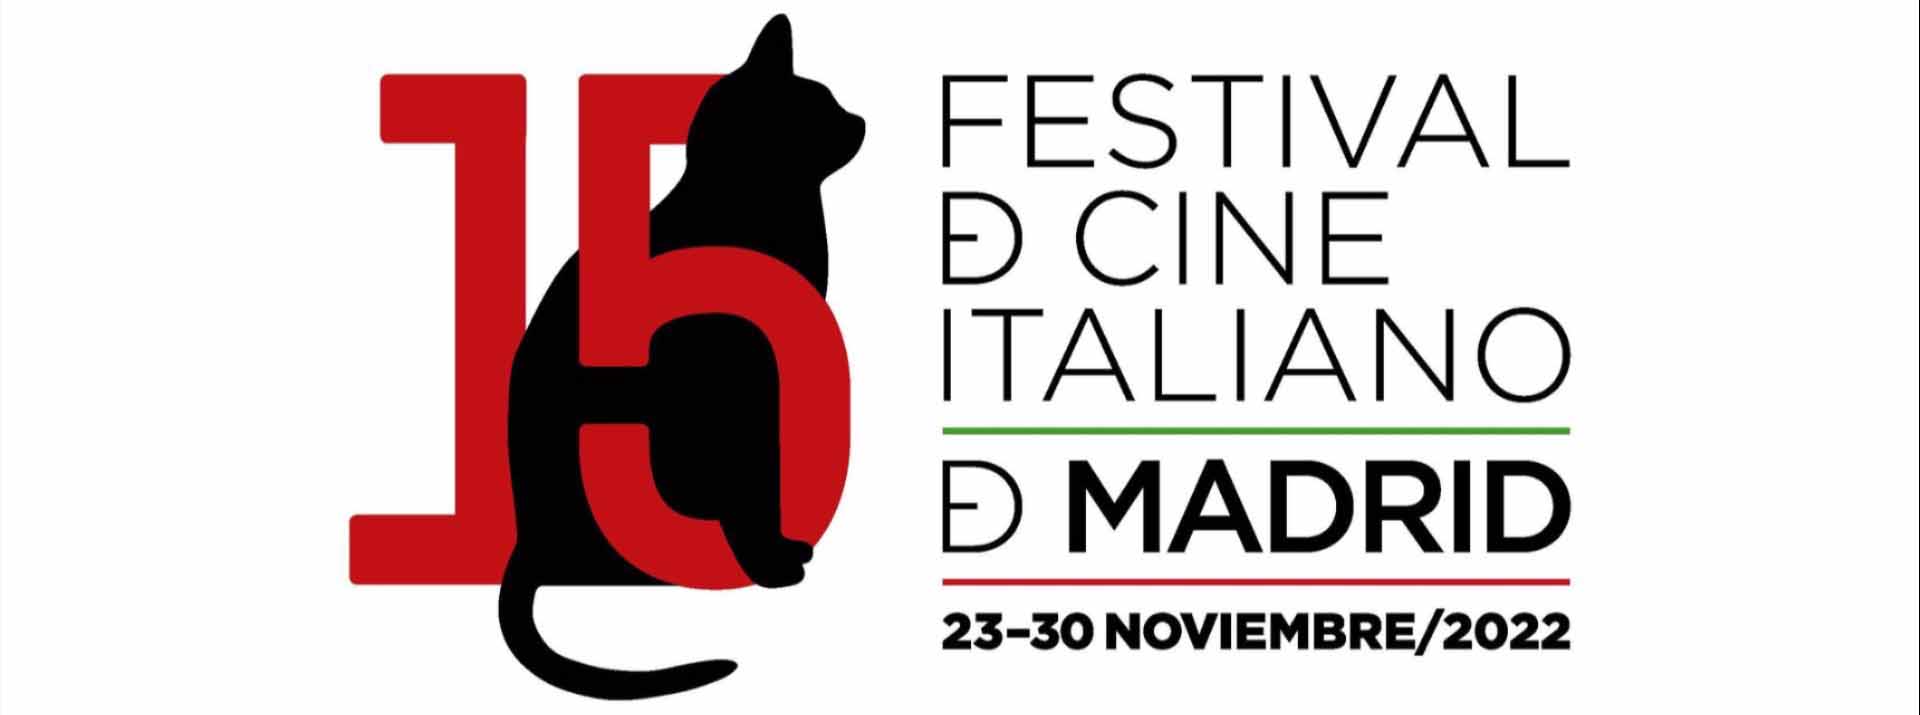 Arranca el 15 Festival de Cine Italiano de Madrid